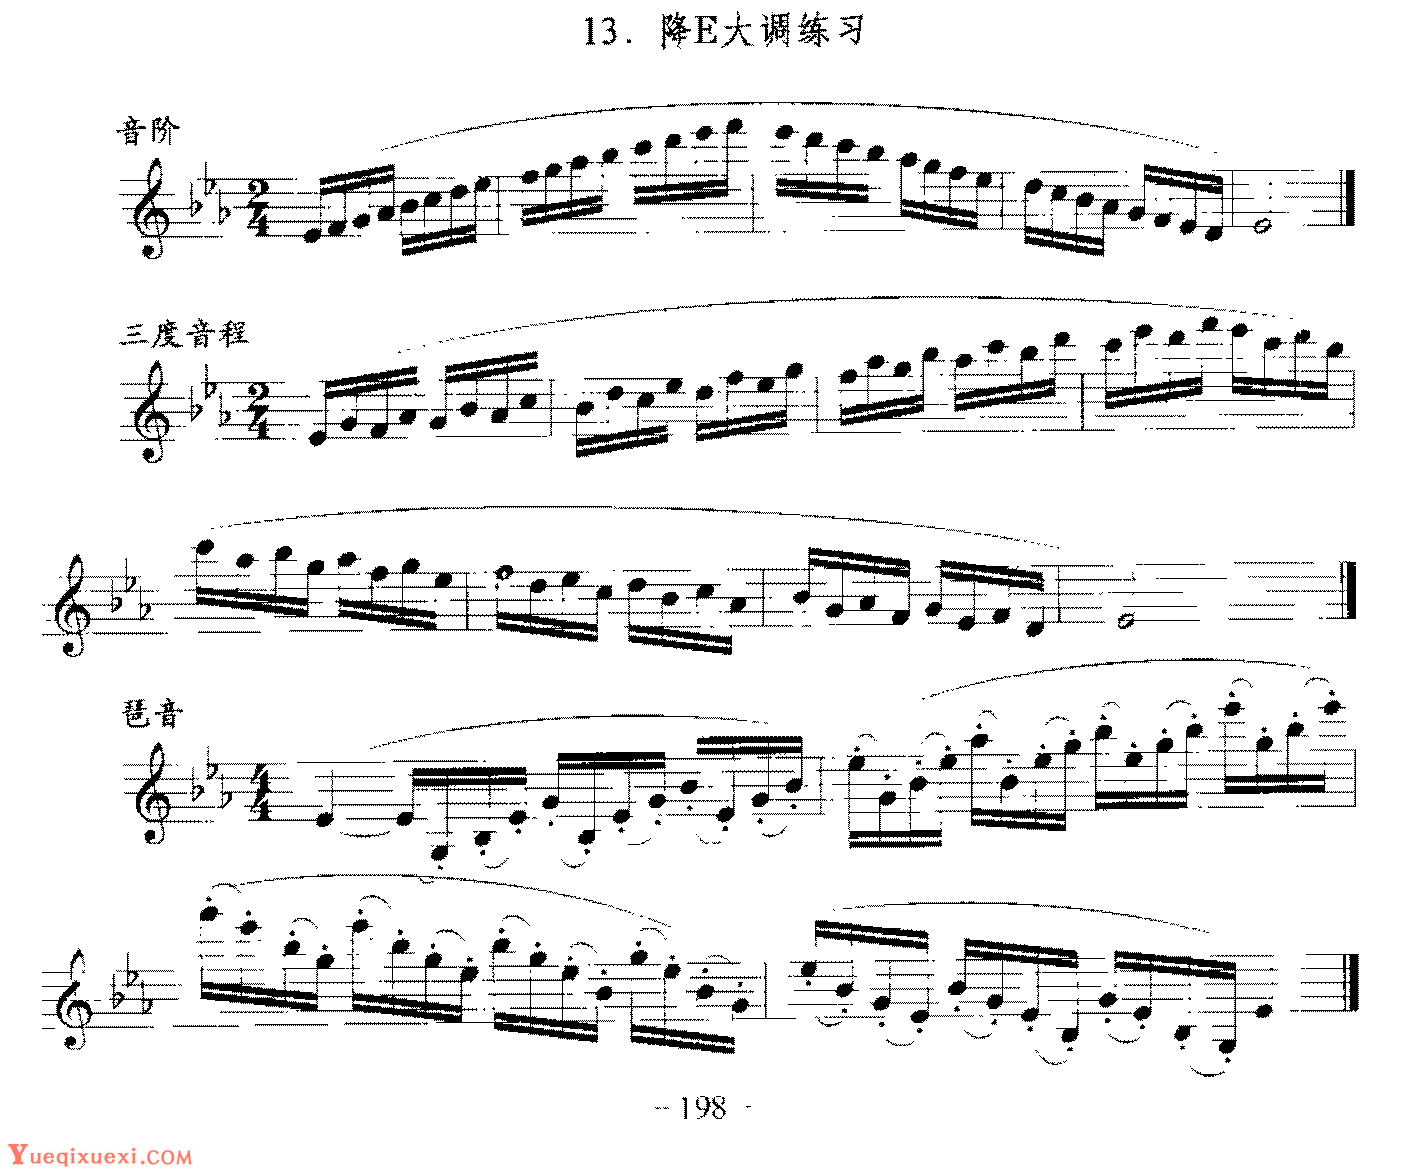 单簧管日常基础技术练习曲《降E大调练习》